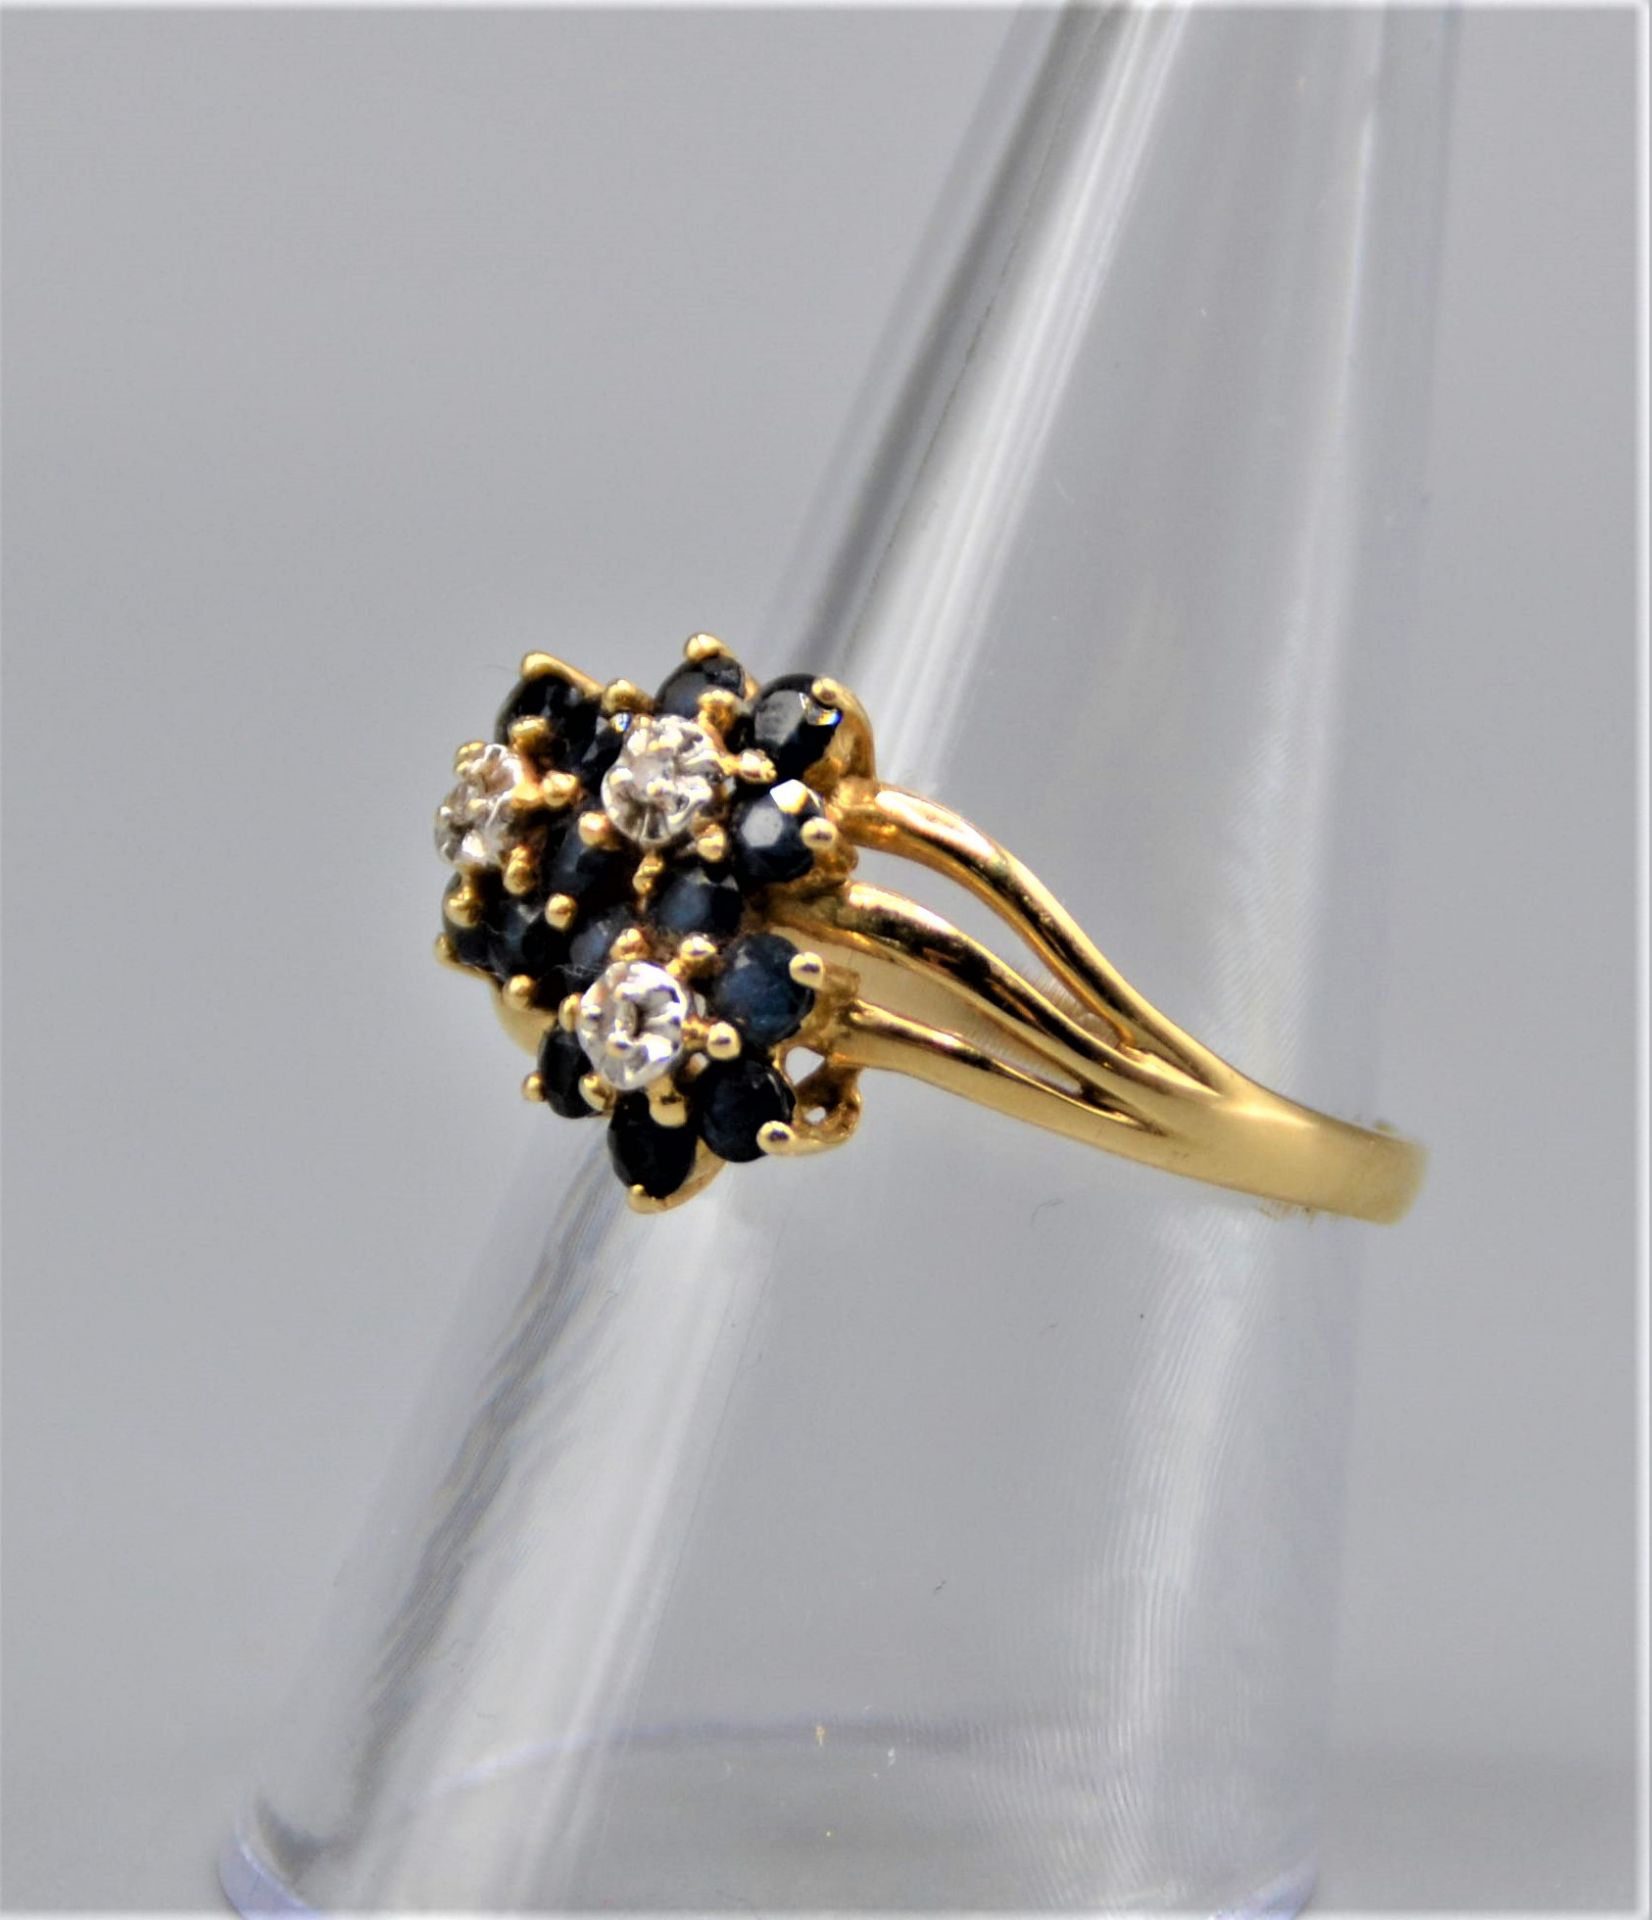 Goldring 585 mit Saphiren Diamanten Blütenform 2,9g Ø 18mm - Image 3 of 3